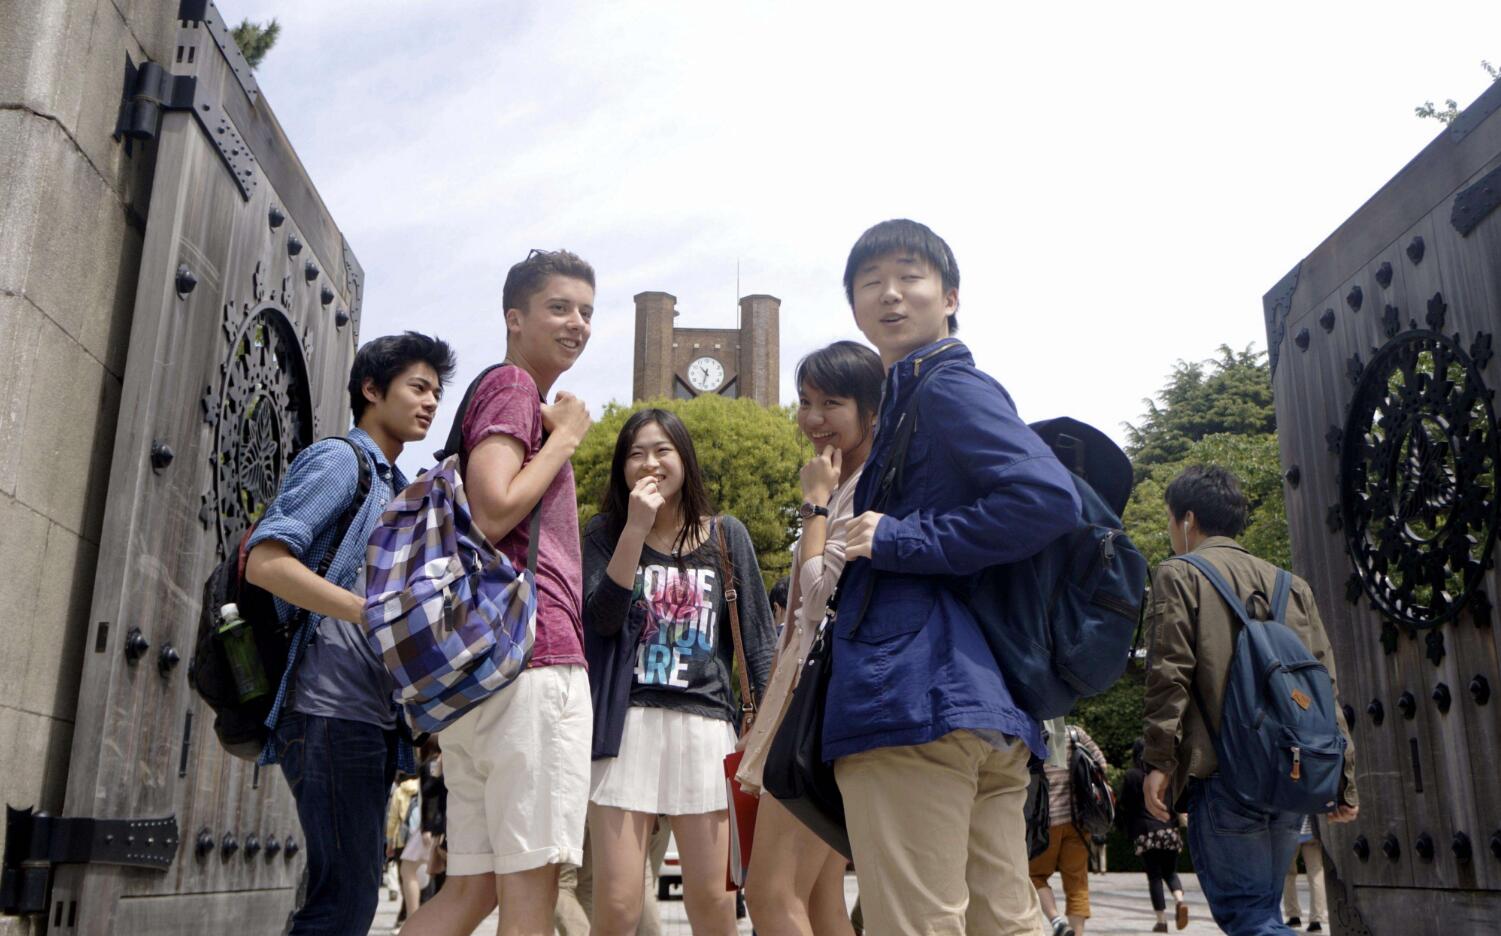 原创美国吸引力下降,大批留学美国的华人回国,其中不乏大量专家